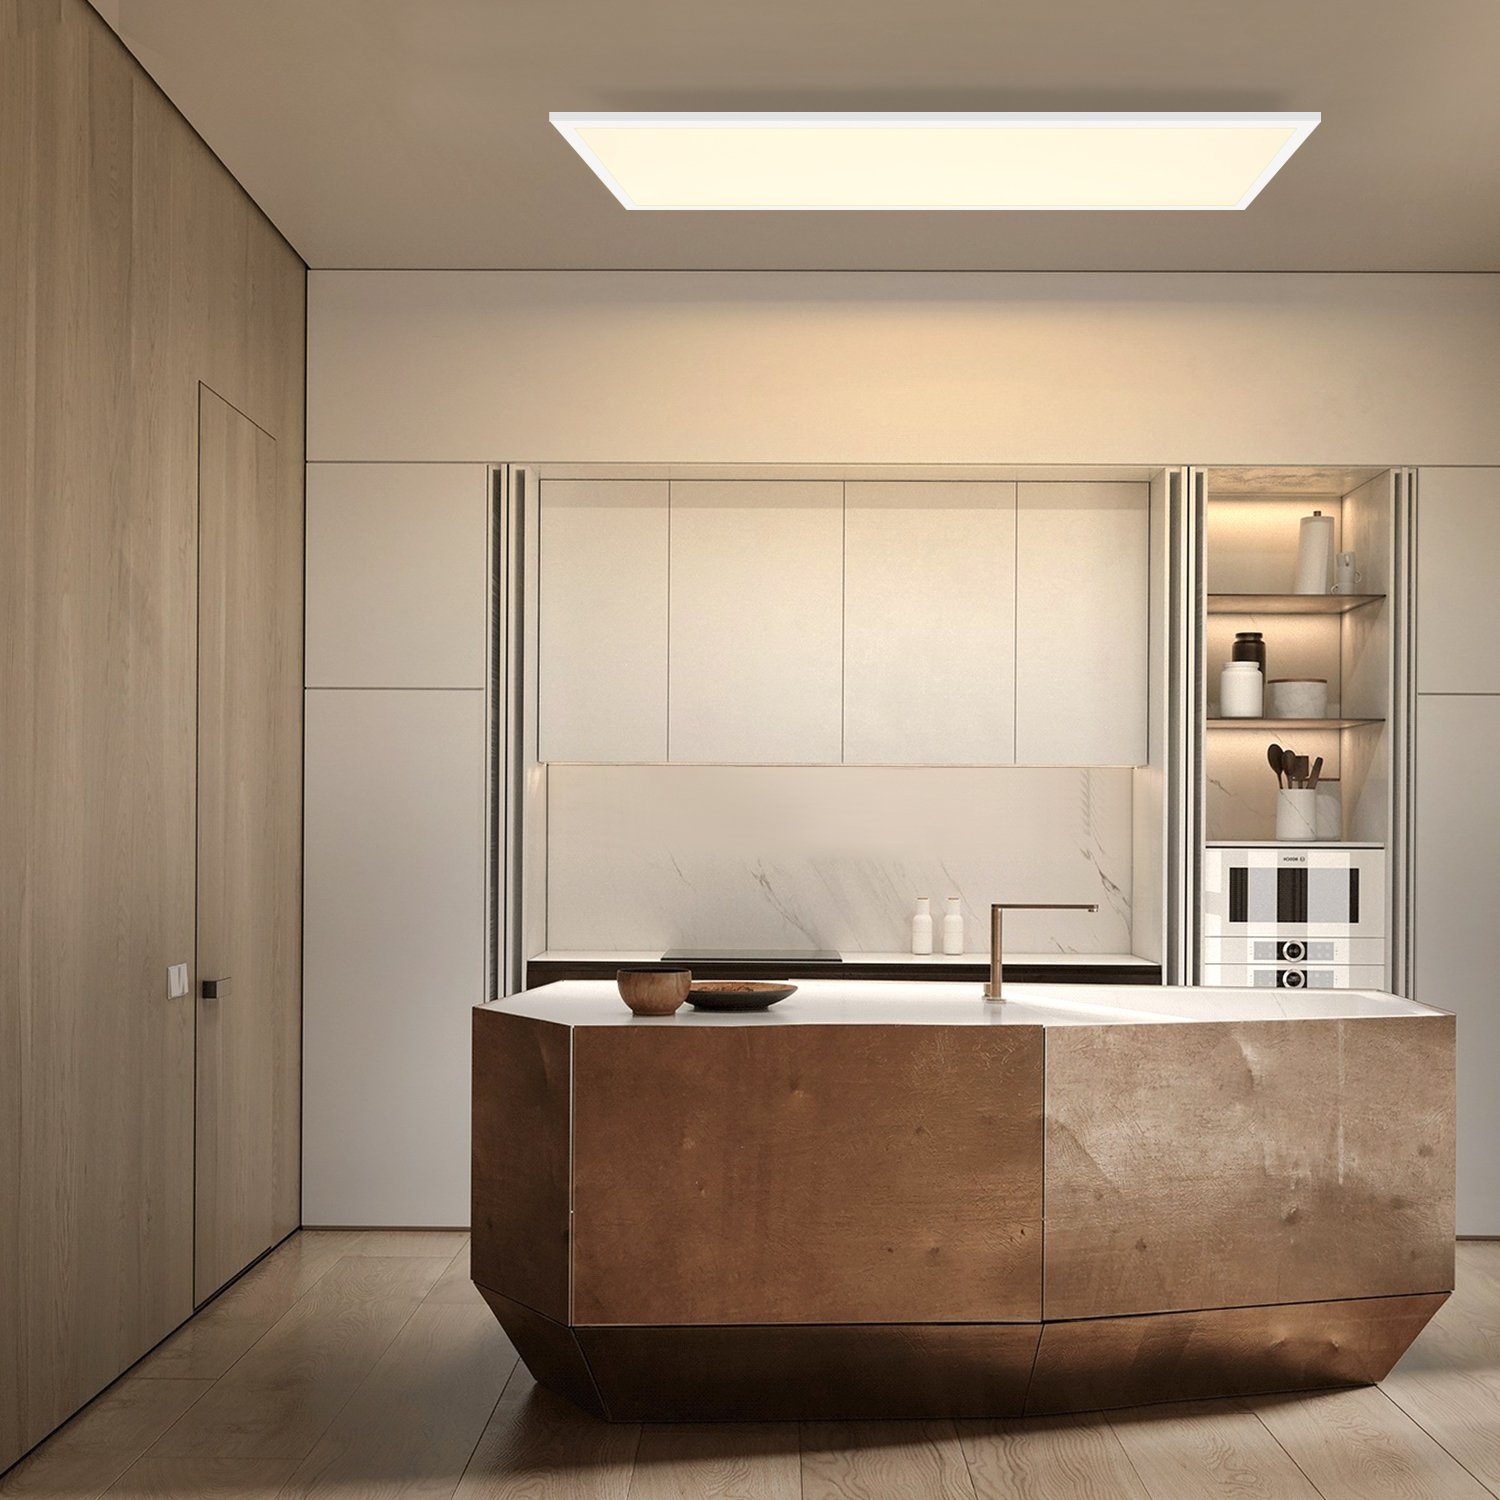 Weiß Küche mit LED für Schlafzimmer Dimmbar integriert, LED Kaltweiß, Wohnzimmer 80x30CM Rechteckige, Deckenlampe Deckenleuchte Panel 39W Büro Flach Neutralweiß, fest Fernbedienung, Nettlife Warmweiß,